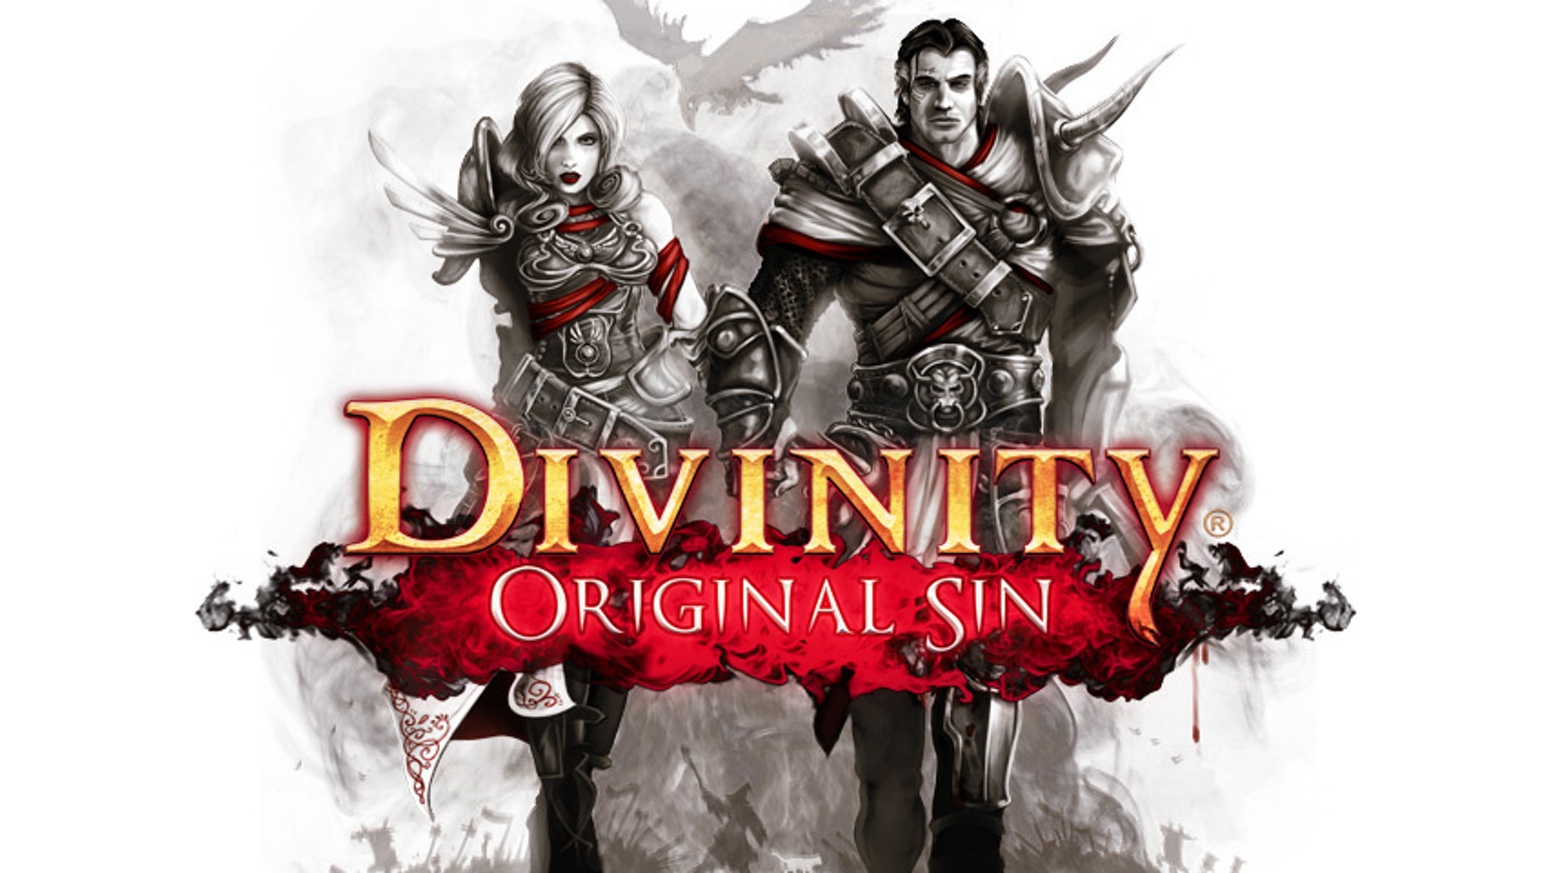 HQ Divinity: Original Sin Wallpapers | File 332.64Kb